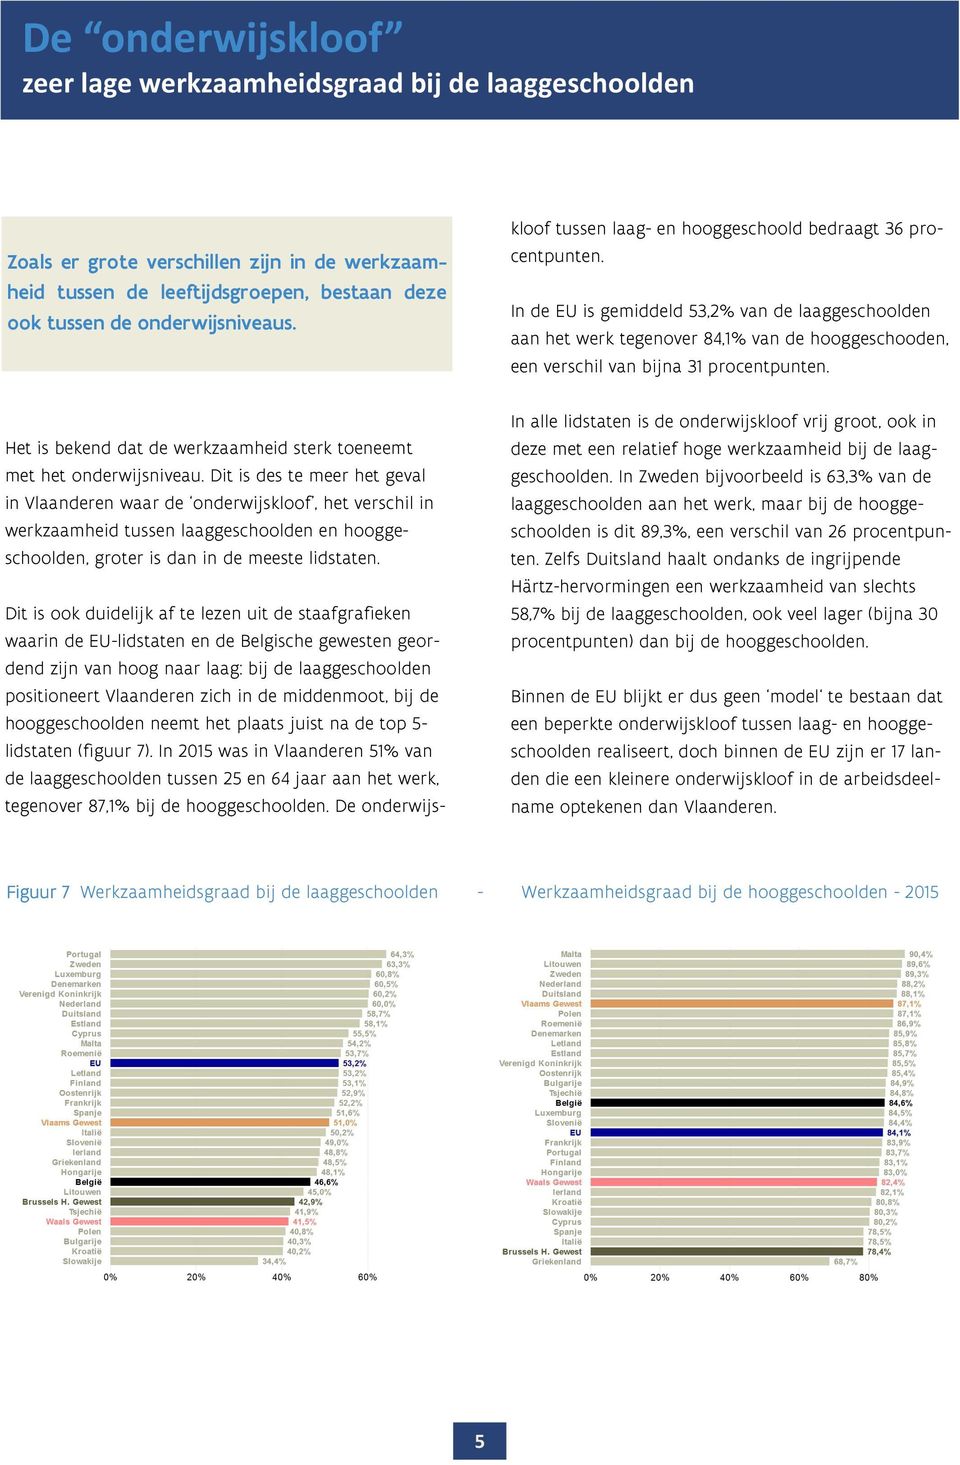 Dit is des te meer het geval in Vlaanderen waar de onderwijskloof, het verschil in werkzaamheid tussen laaggeschoolden en hooggeschoolden, groter is dan in de meeste lidstaten.